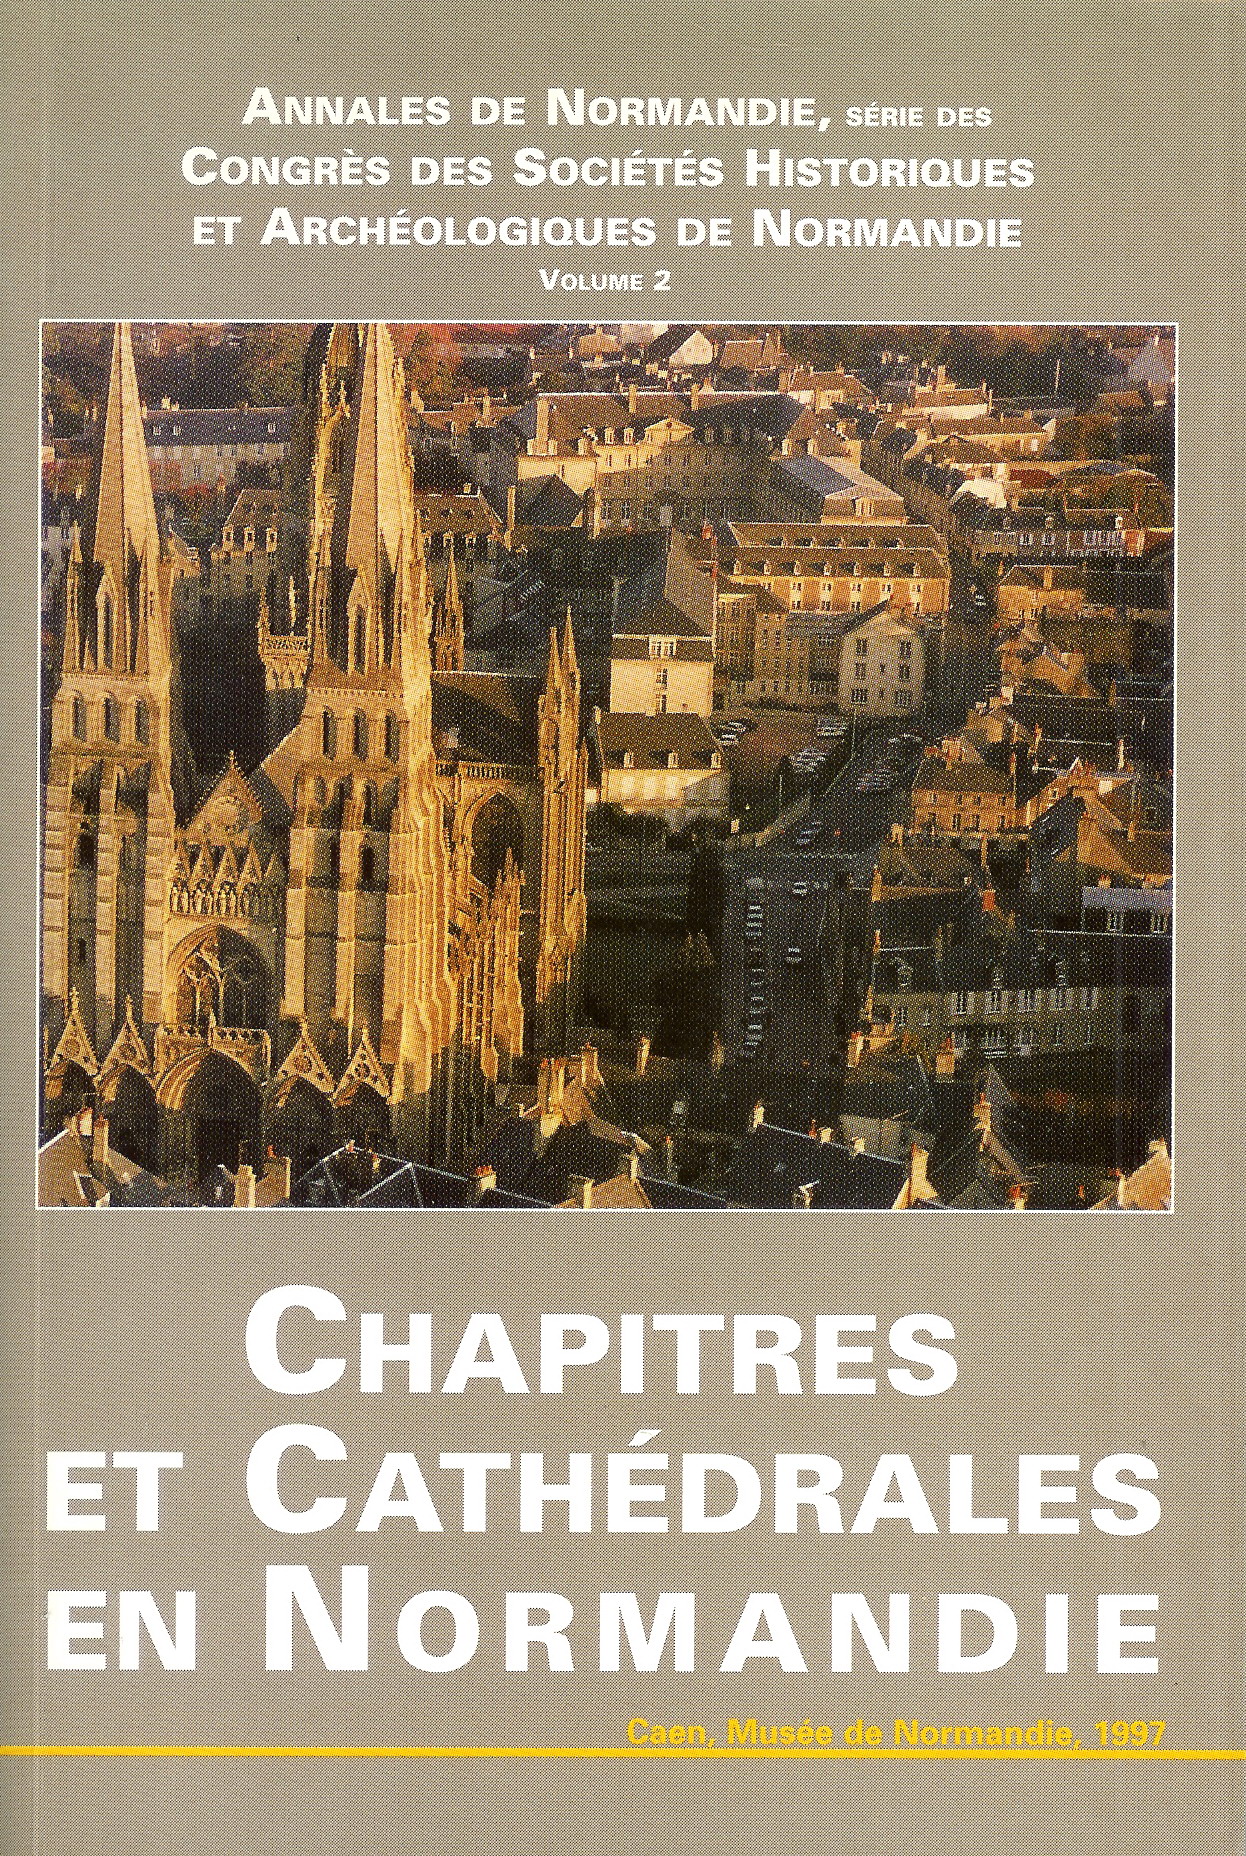 Chapitres et cathédrales en Normandie